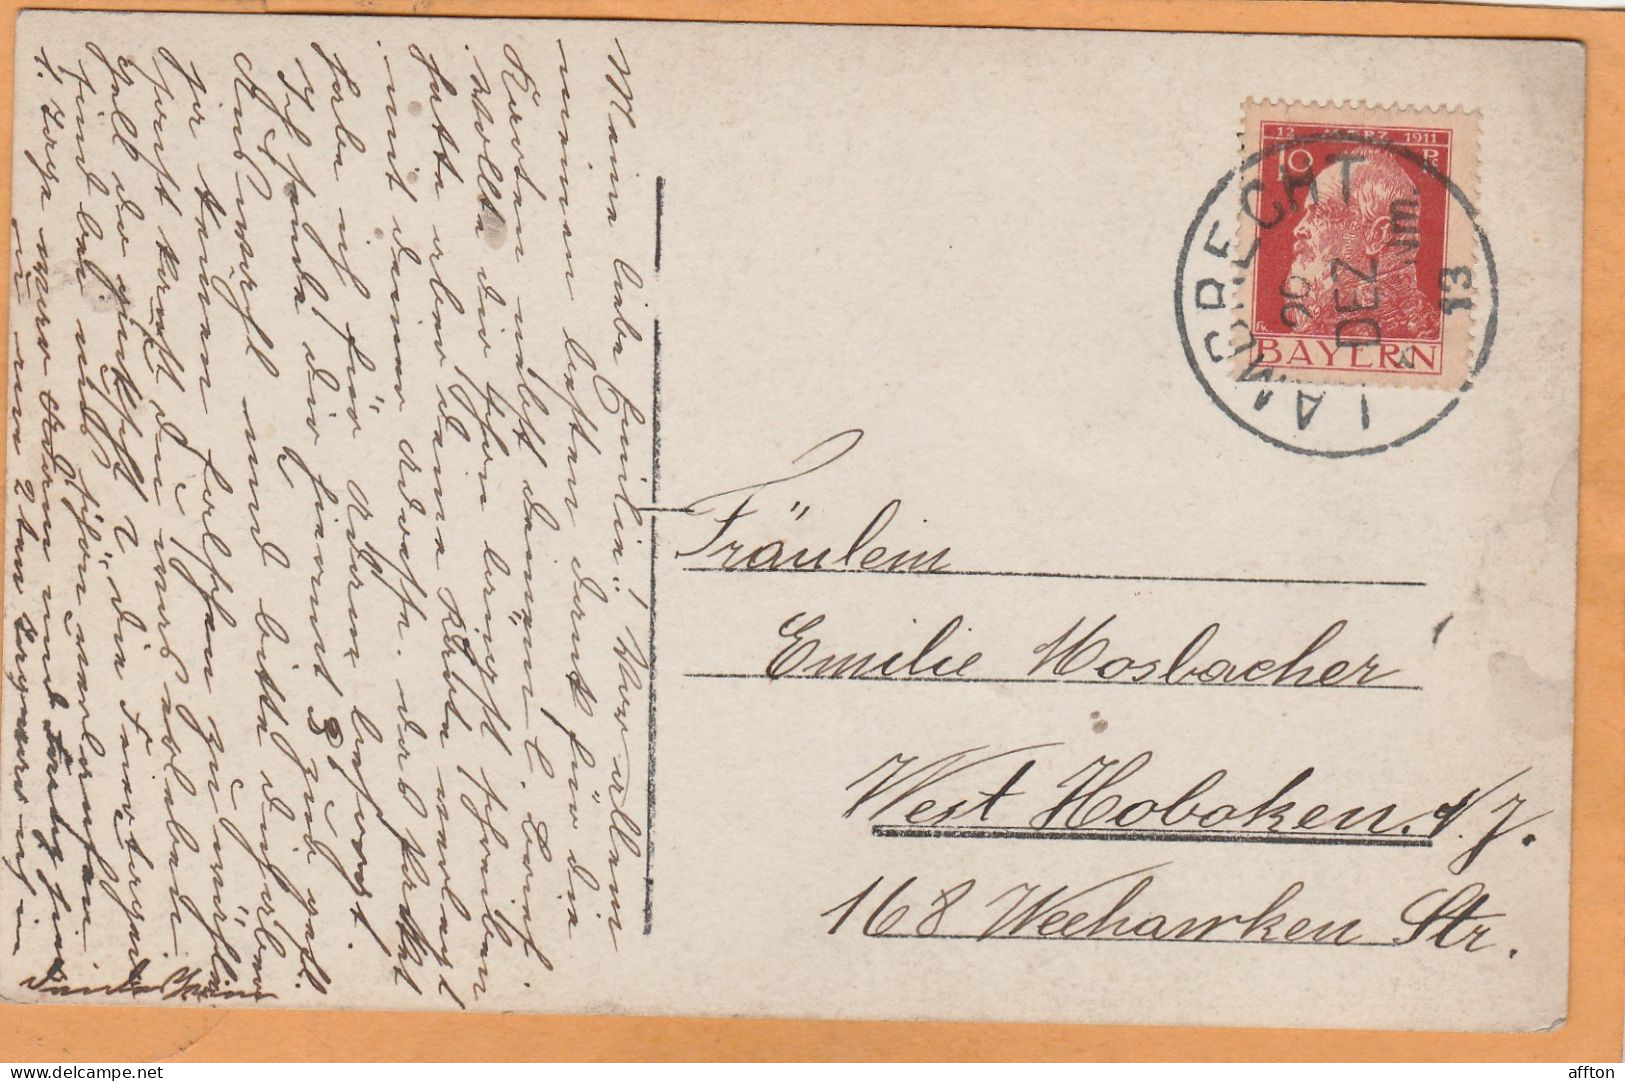 Lambrecht Germany 1913 Real Photo Postcard - Bad Dürkheim